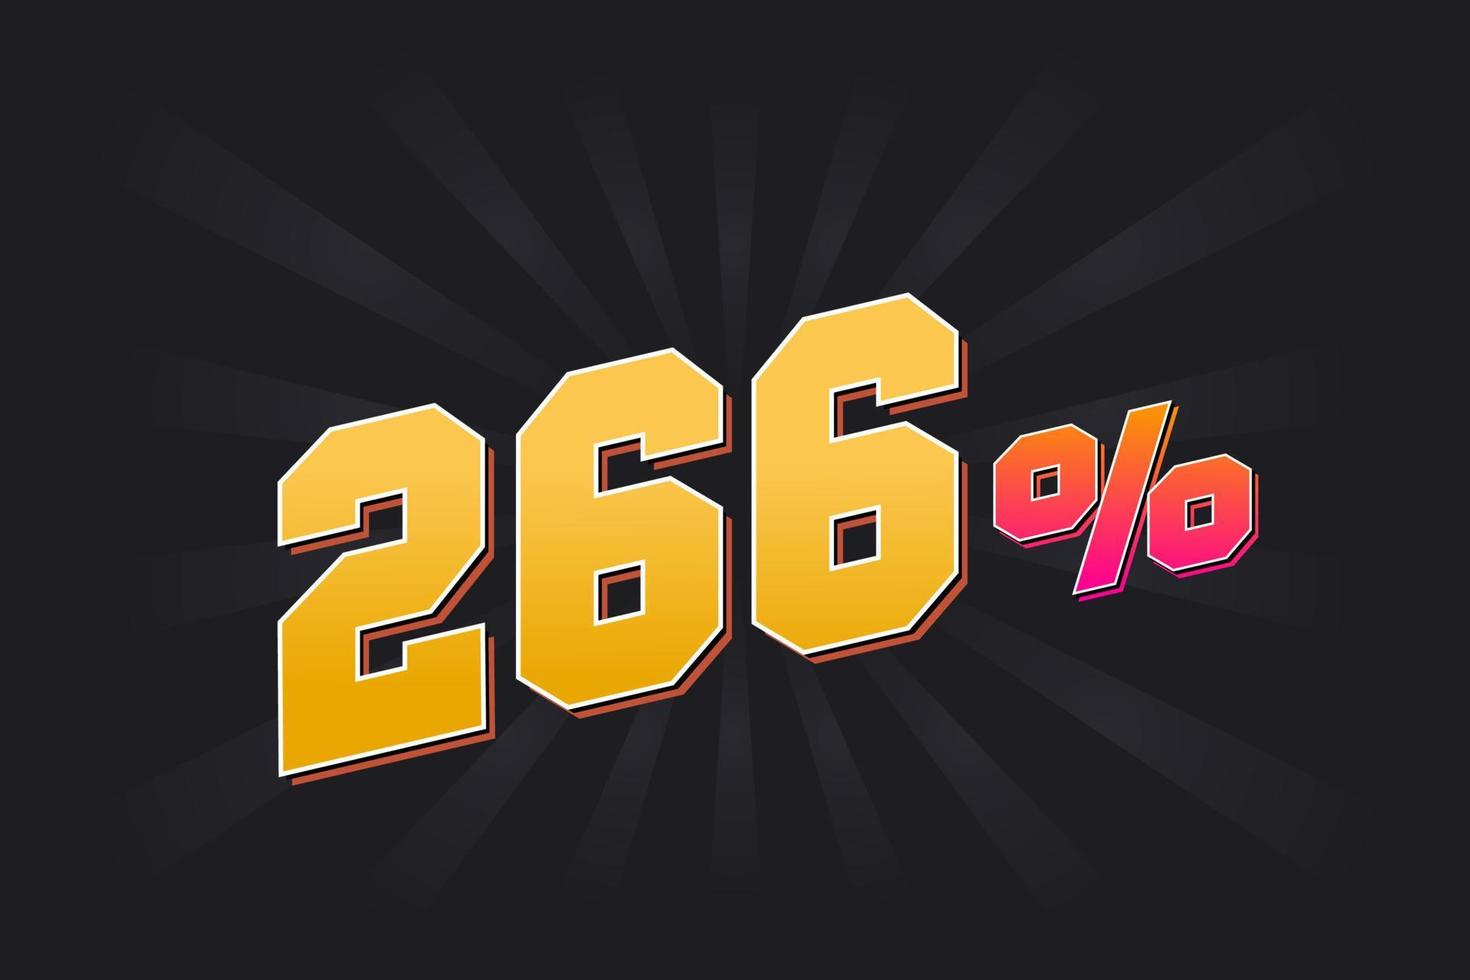 266 rabatt baner med mörk bakgrund och gul text. 266 procent försäljning PR design. vektor